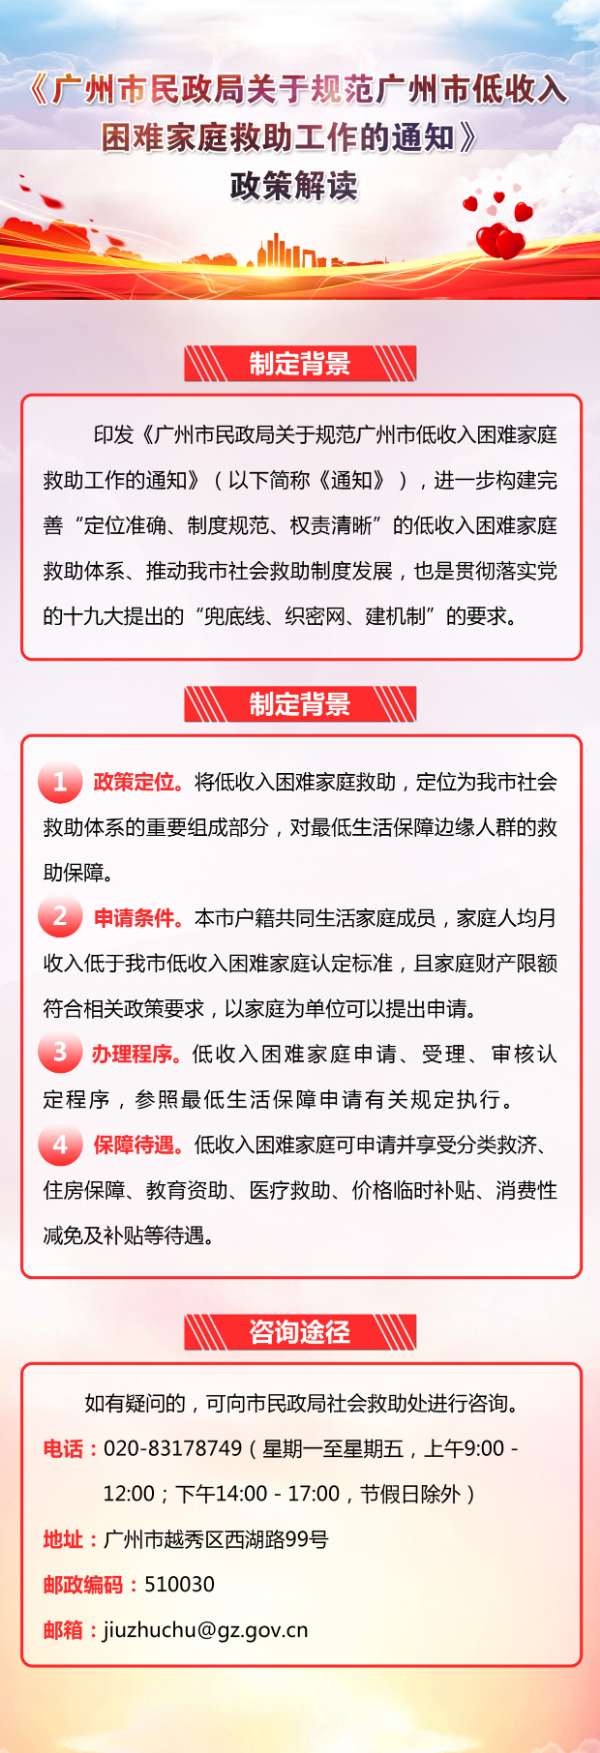 一图读懂：《广州市民政局关于规范广州市低收入困难家庭救助工作的通知》.jpg